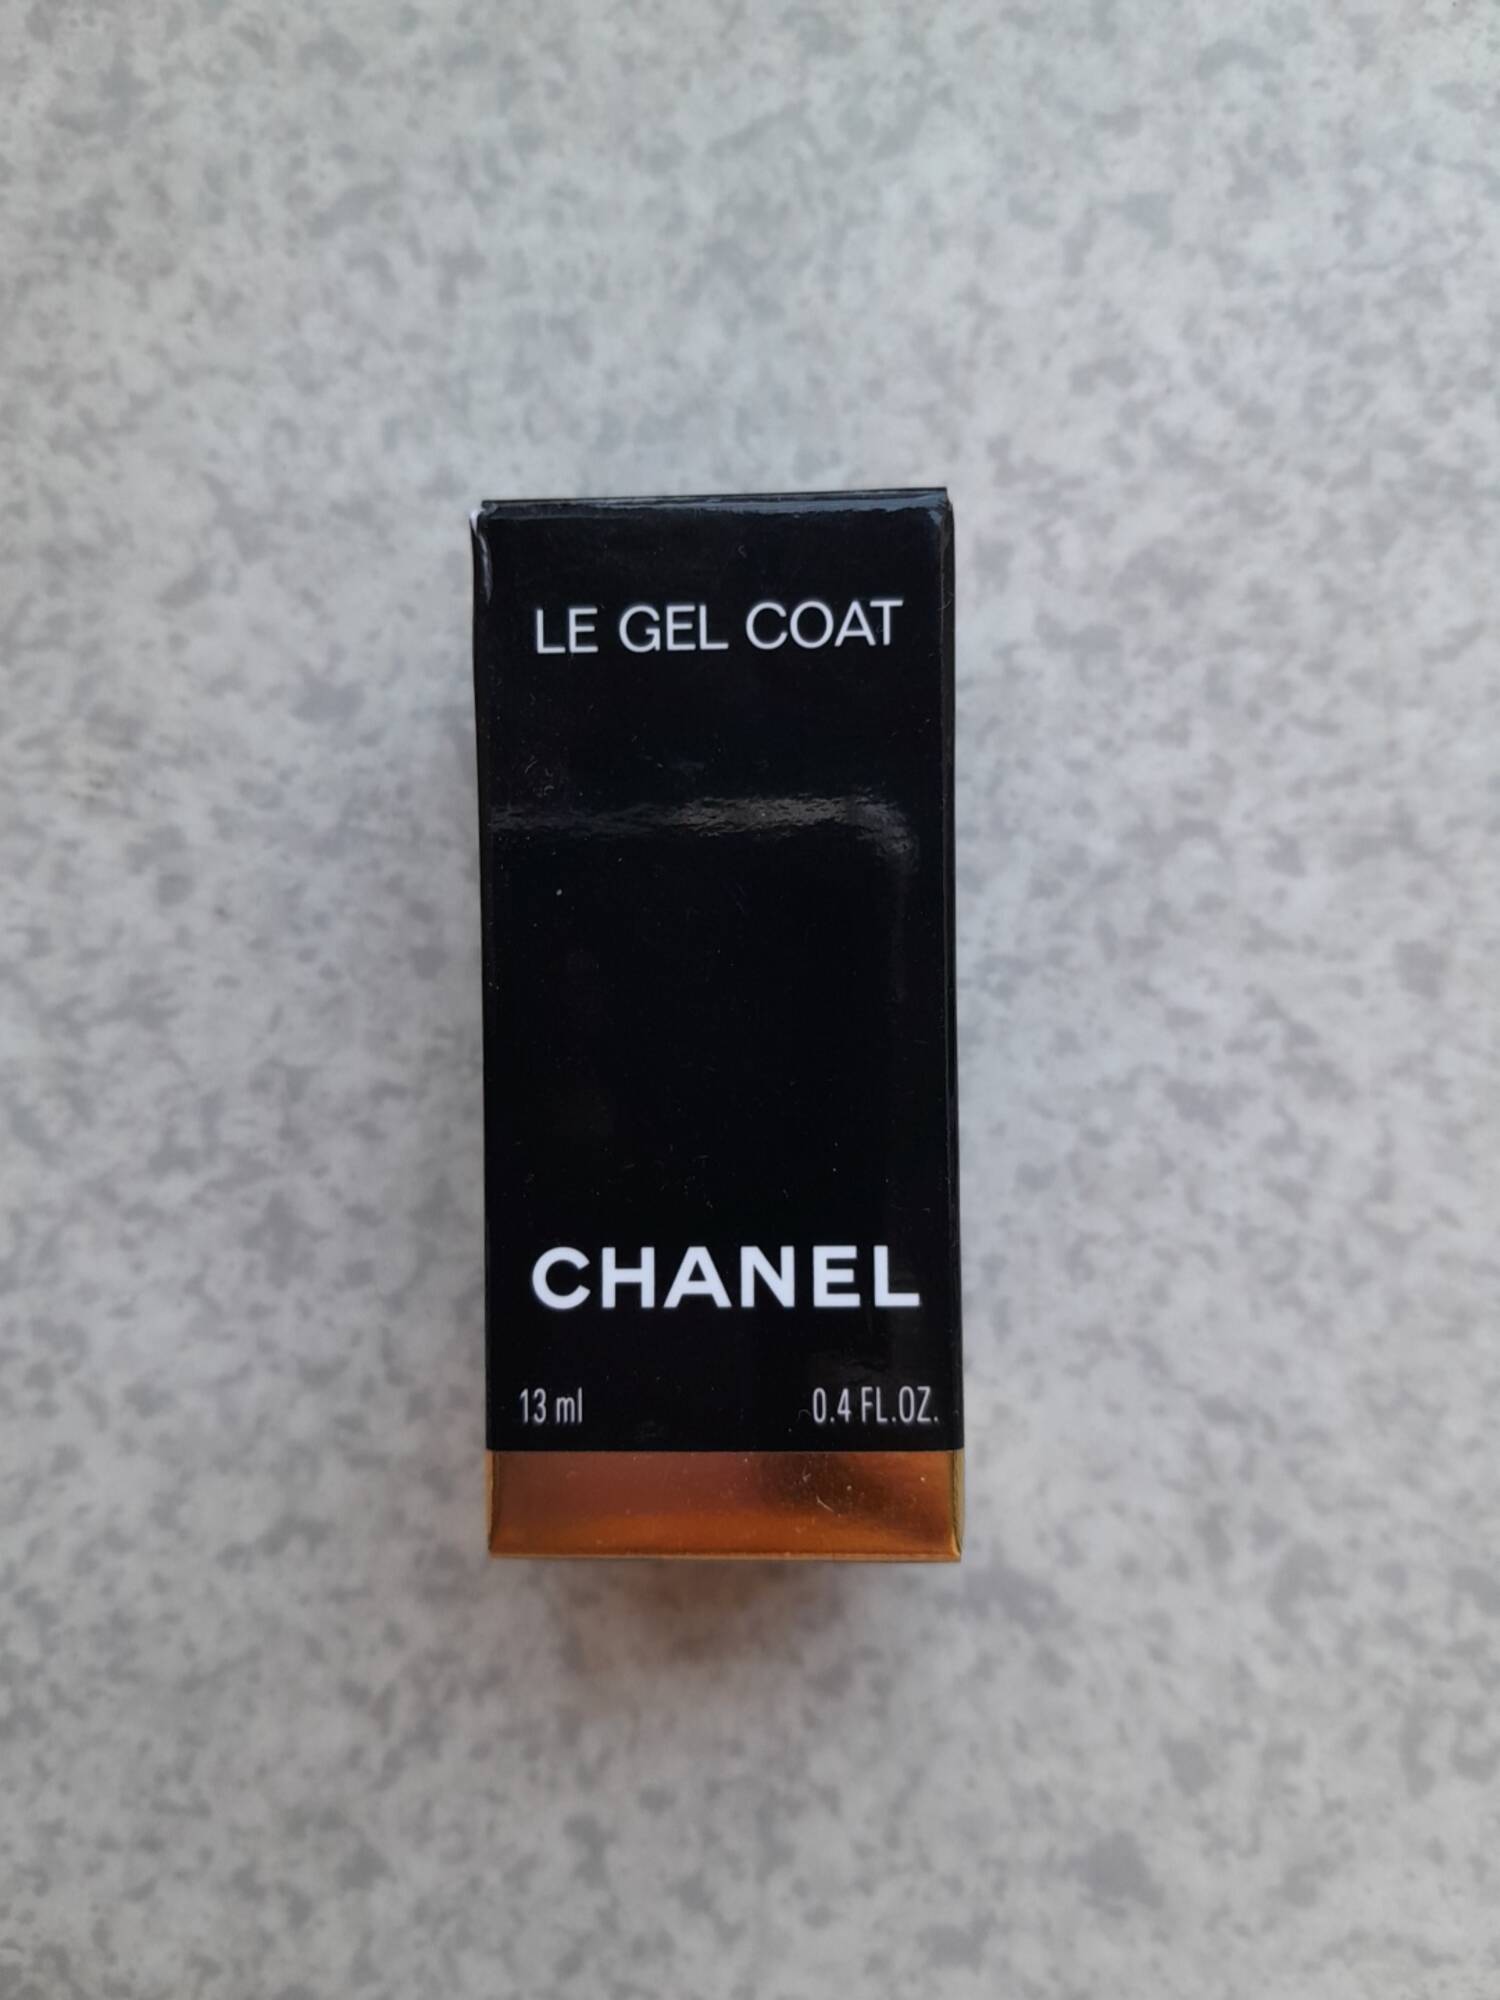 CHANEL - Le gel coat